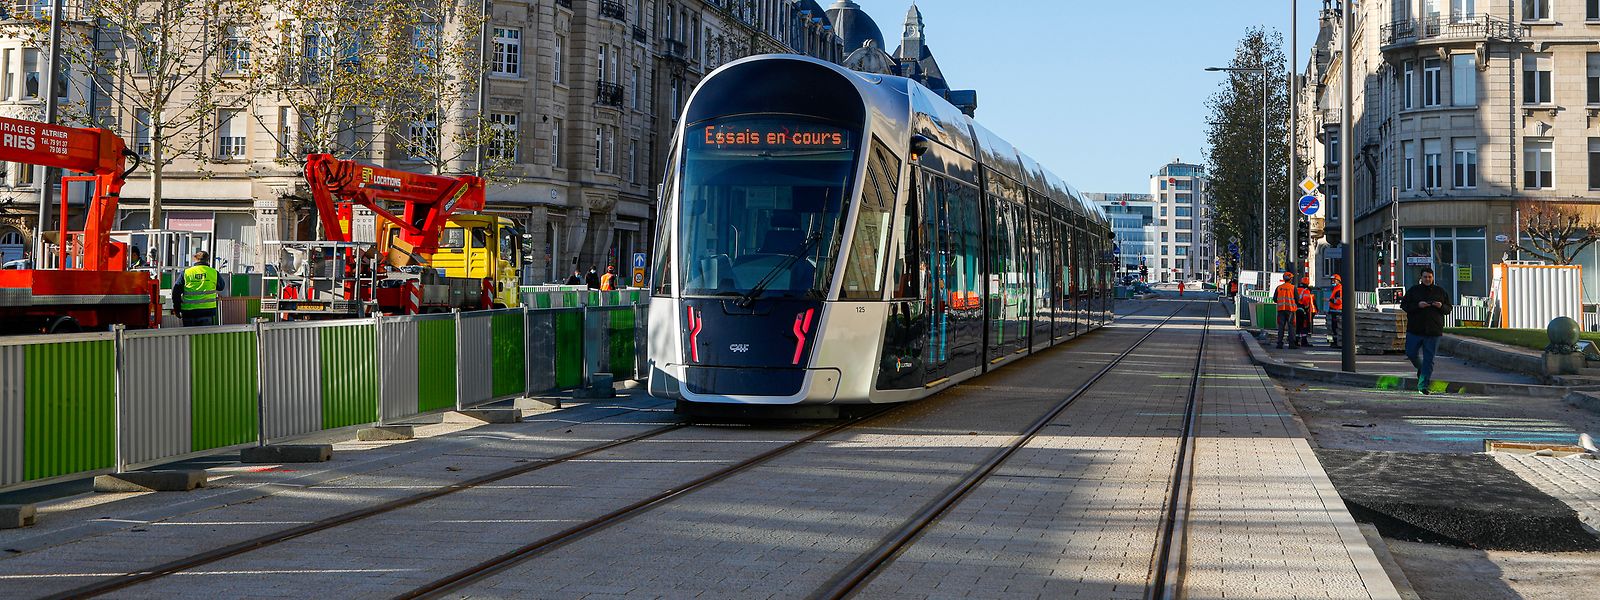 Devenu populaire, le tram n'en desservira pas pour autant toutes les agglomérations du pays, précise François Bausch.